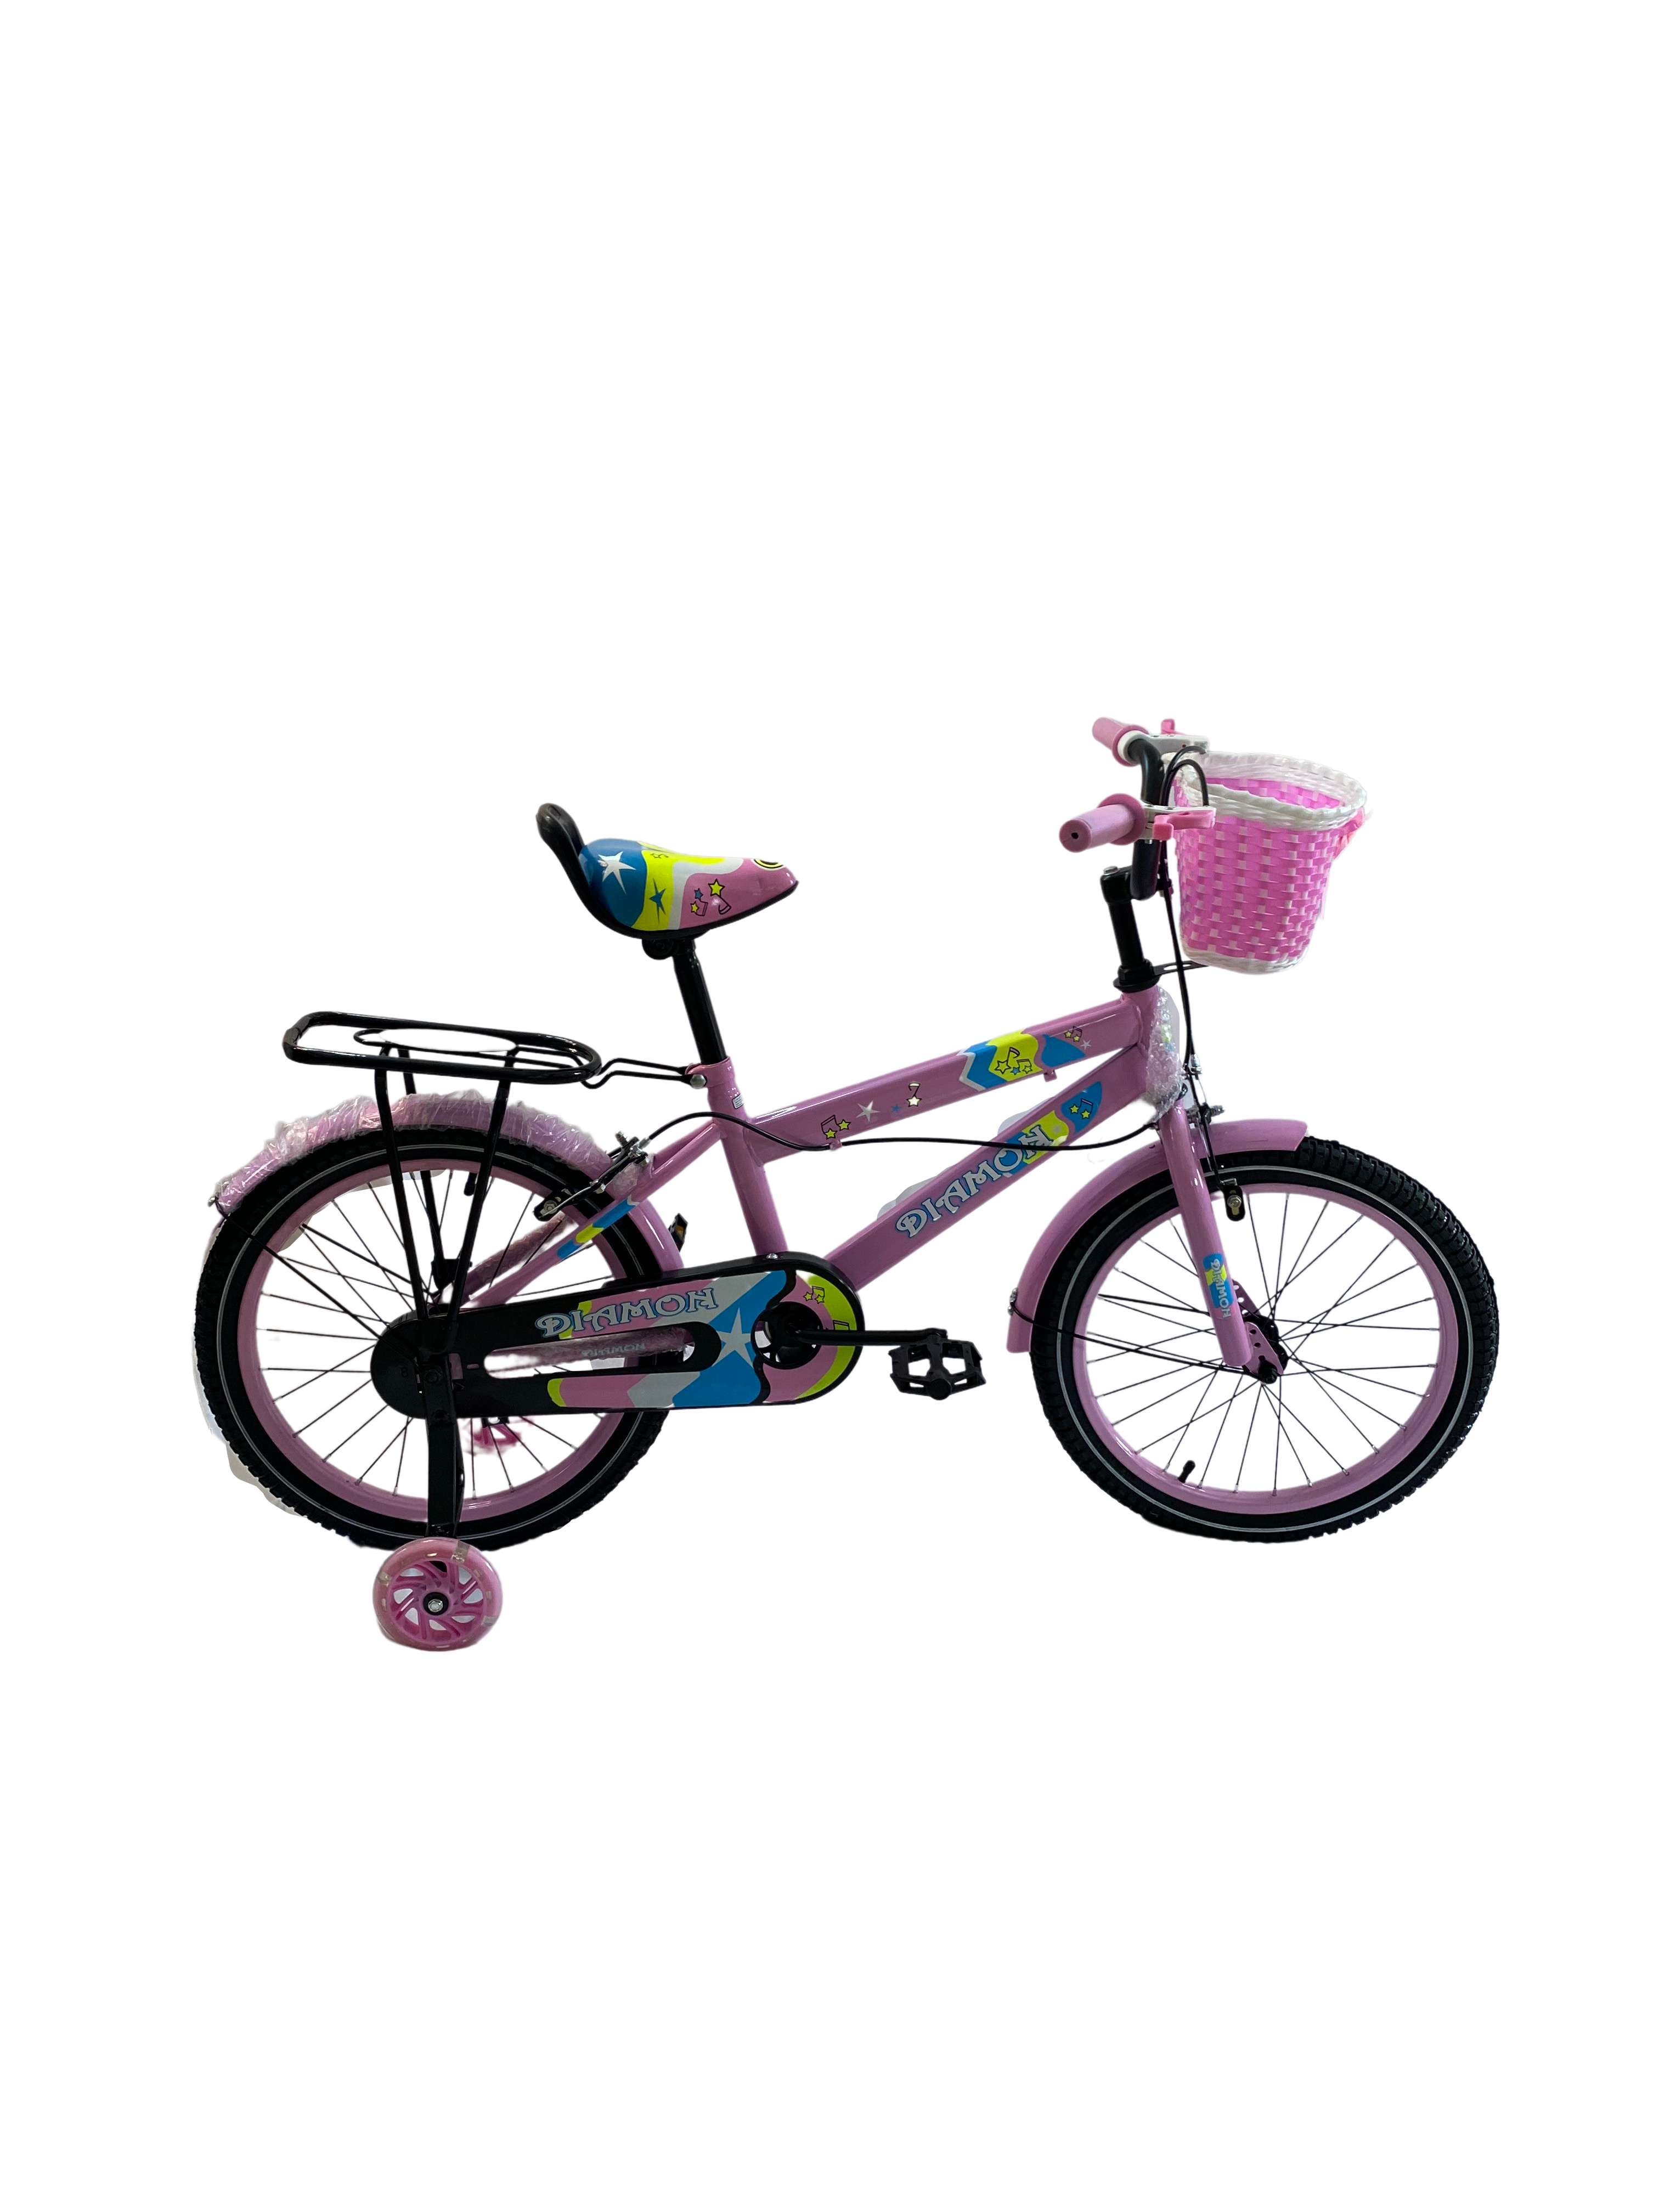 Bicicleta Go Kart 18inch Diamon, pentru copii cu varsta 5- 9 ani,cu cos jucarii , roti ajutatoare Silicon,culoare roz